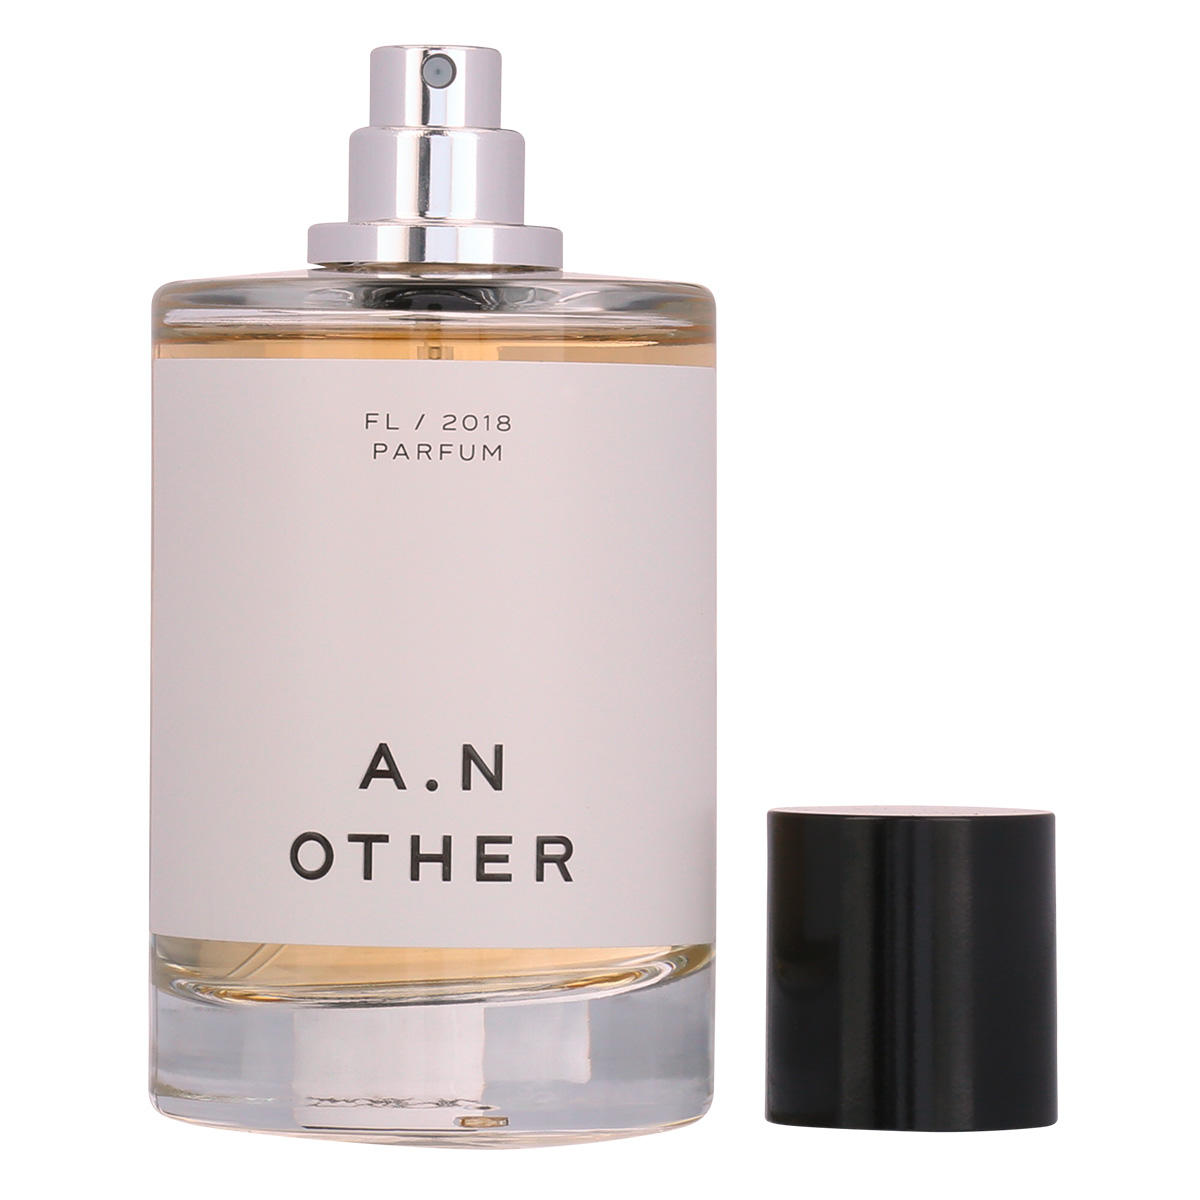 A.N OTHER FL/2018 Eau de Parfum 100 ml - 3